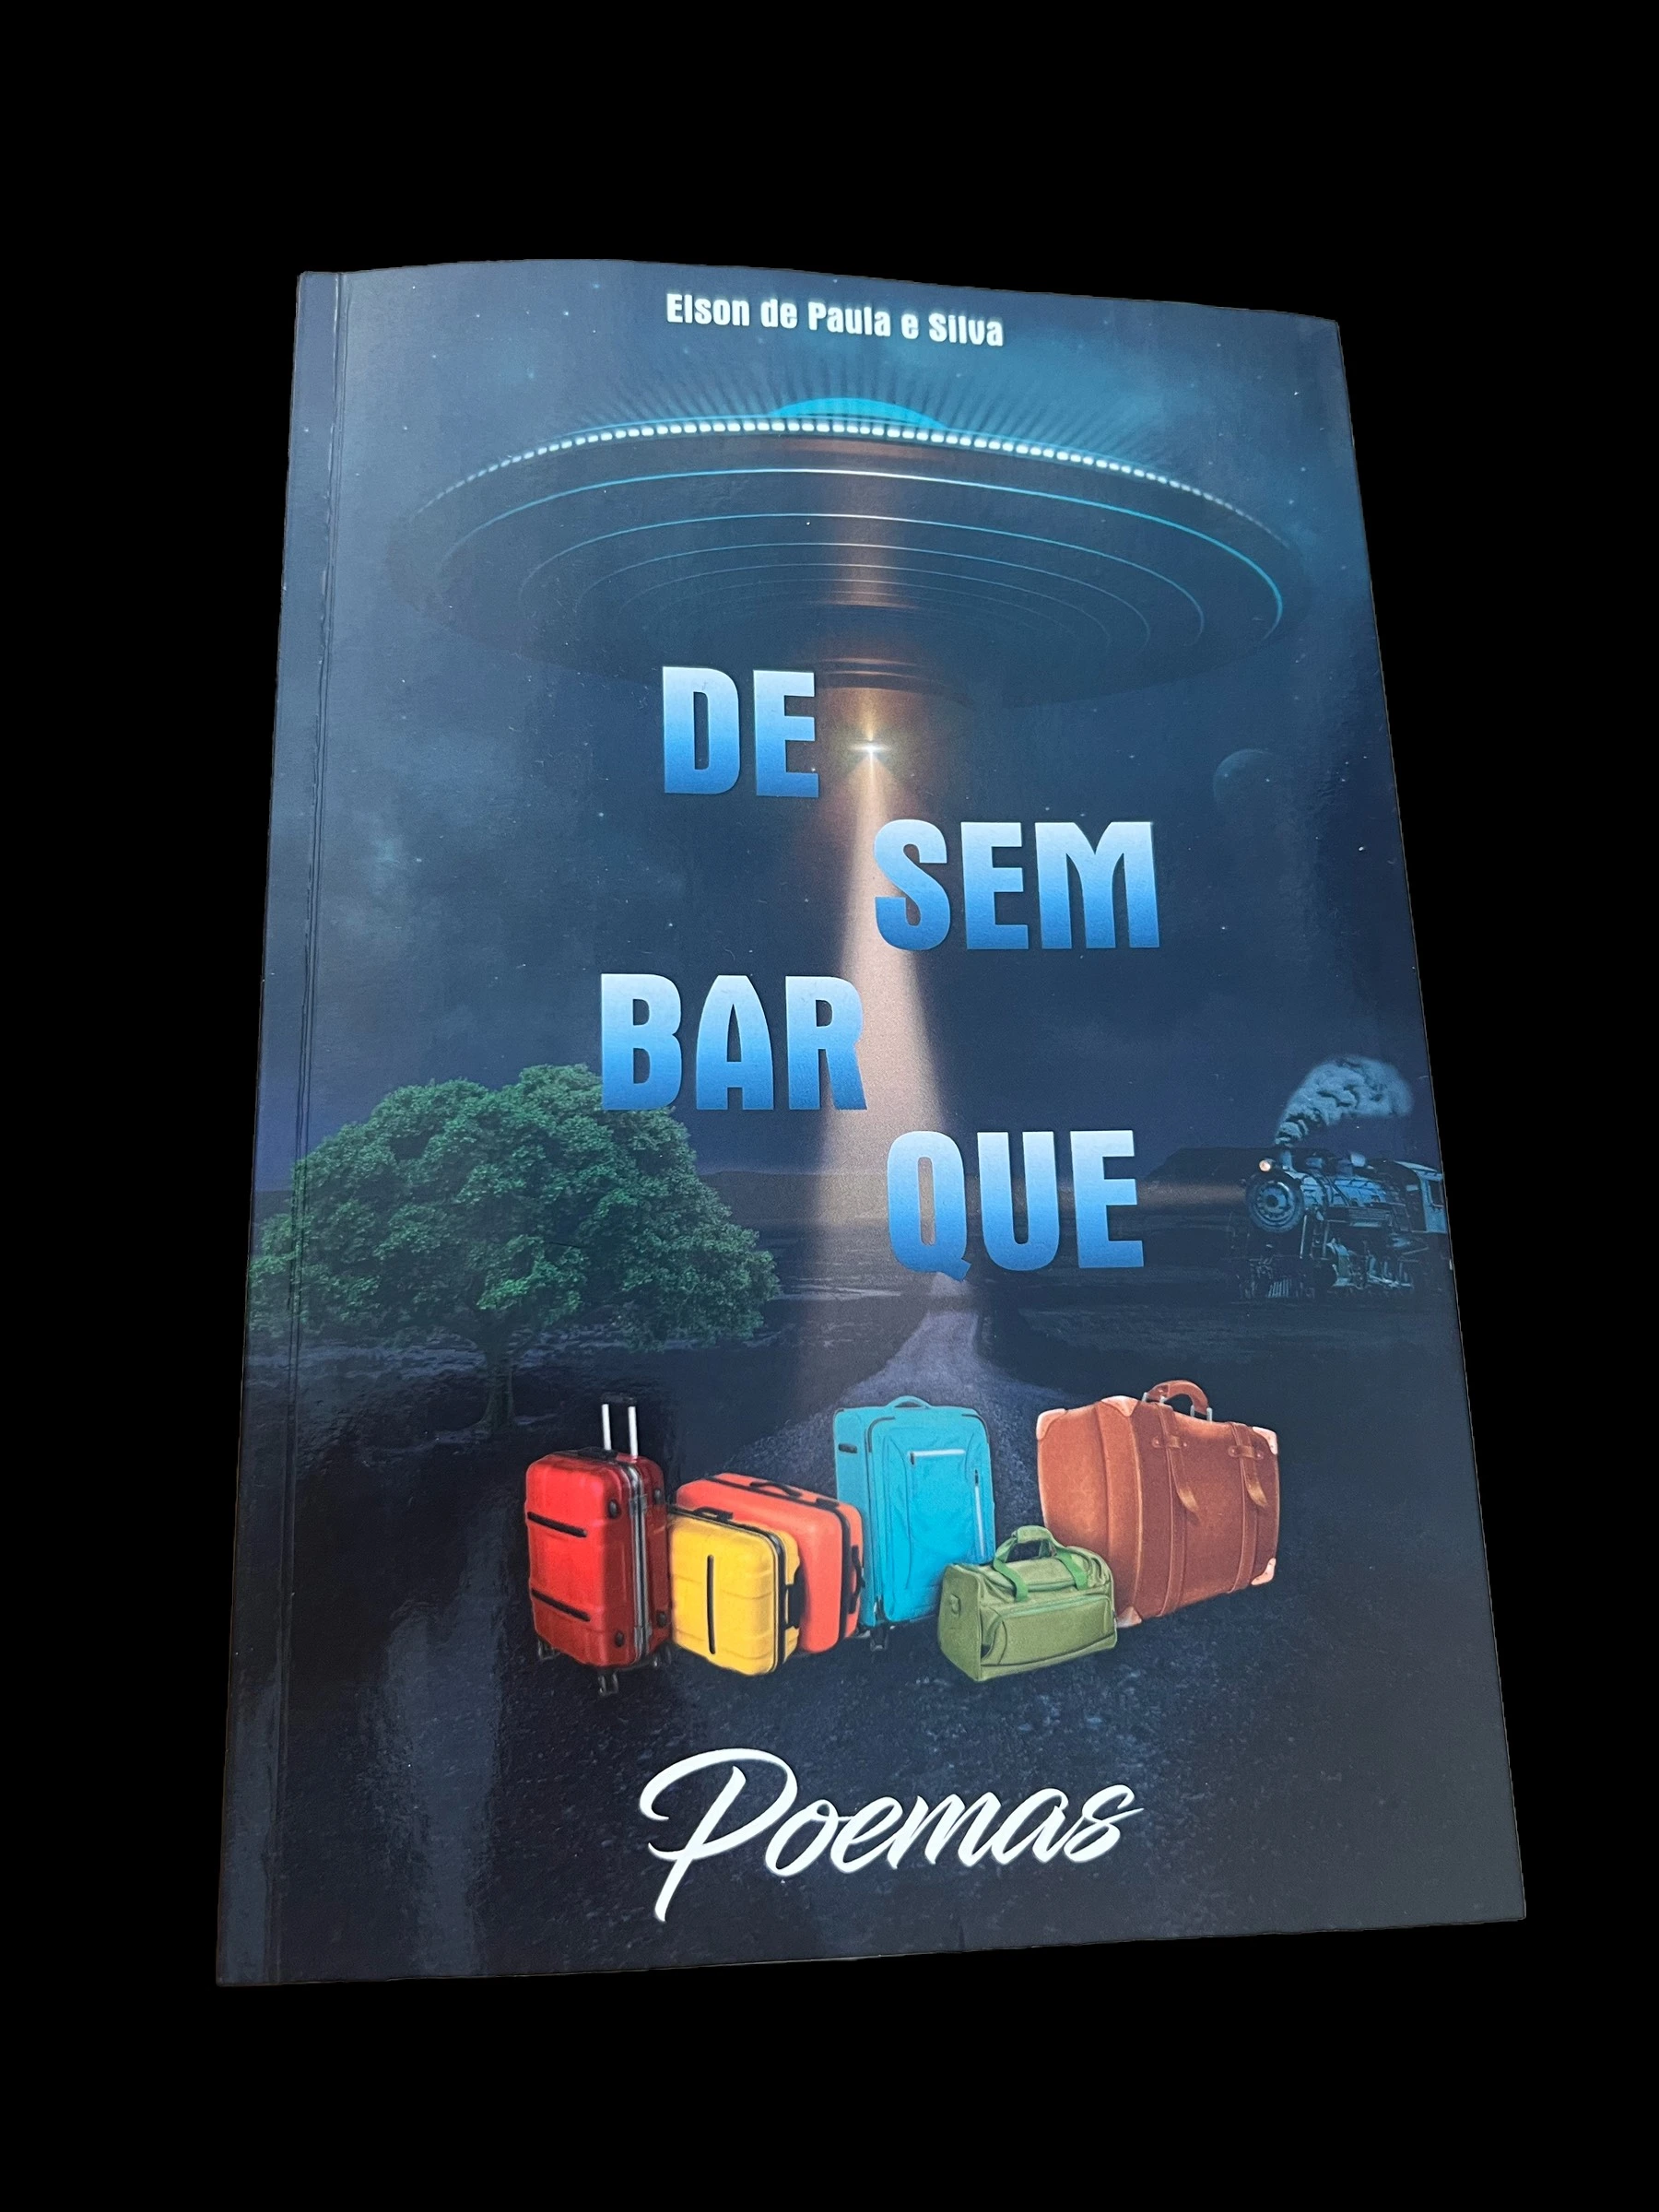 O renomado poeta muzambinhense de criação, Elson de Paula e Silva, lançará o seu segundo livro, "Desembarque", em uma emocionante continuação de sua jornada literária